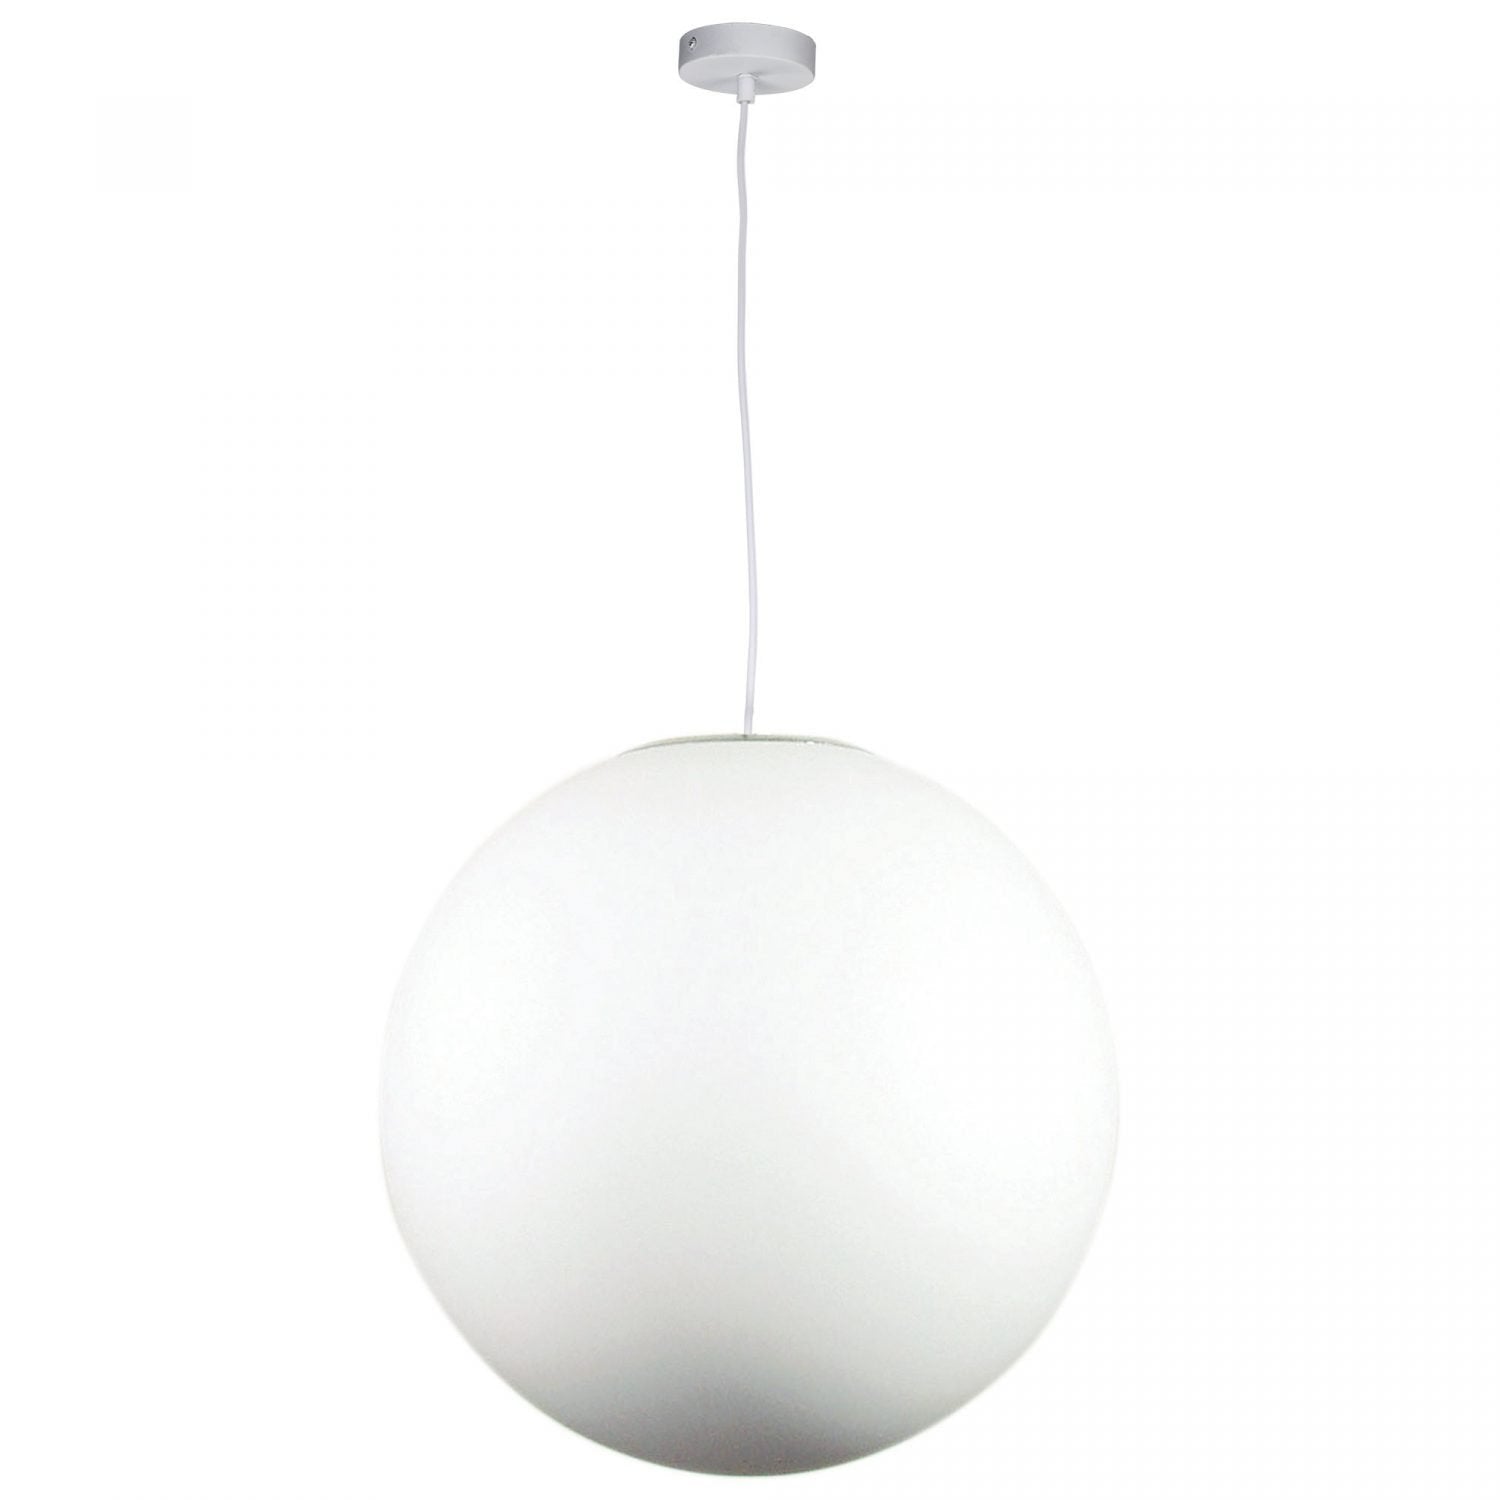 Buy Pendant lights australia - Phase 1 Light Pendant 500mm White - OL64150WH